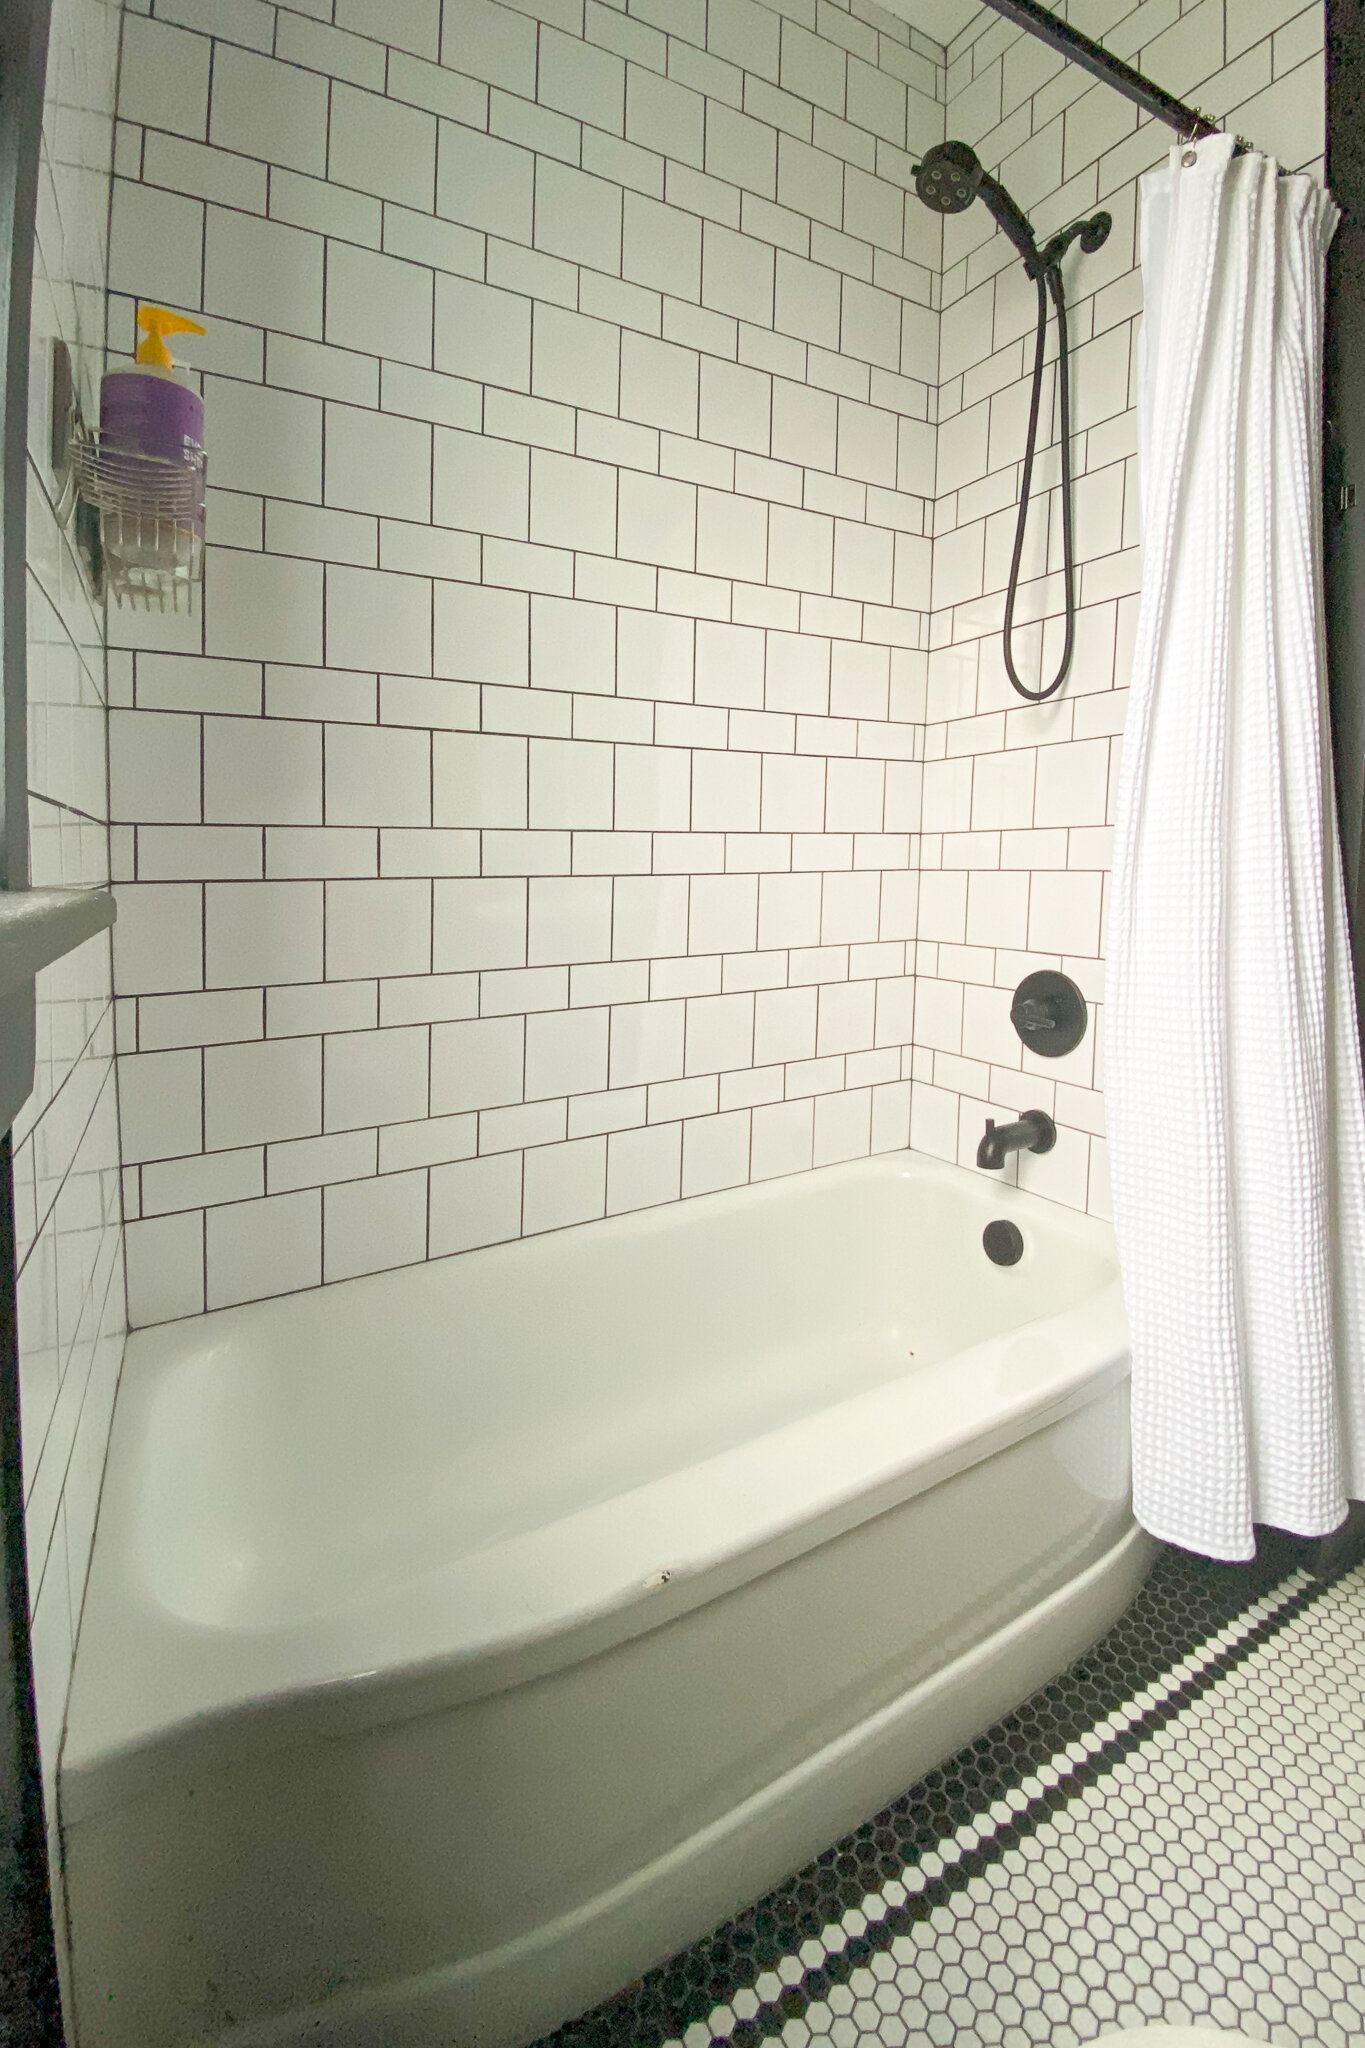 Historic Bathroom Tile Designs Orc, Bathtub Tile Ideas Photos